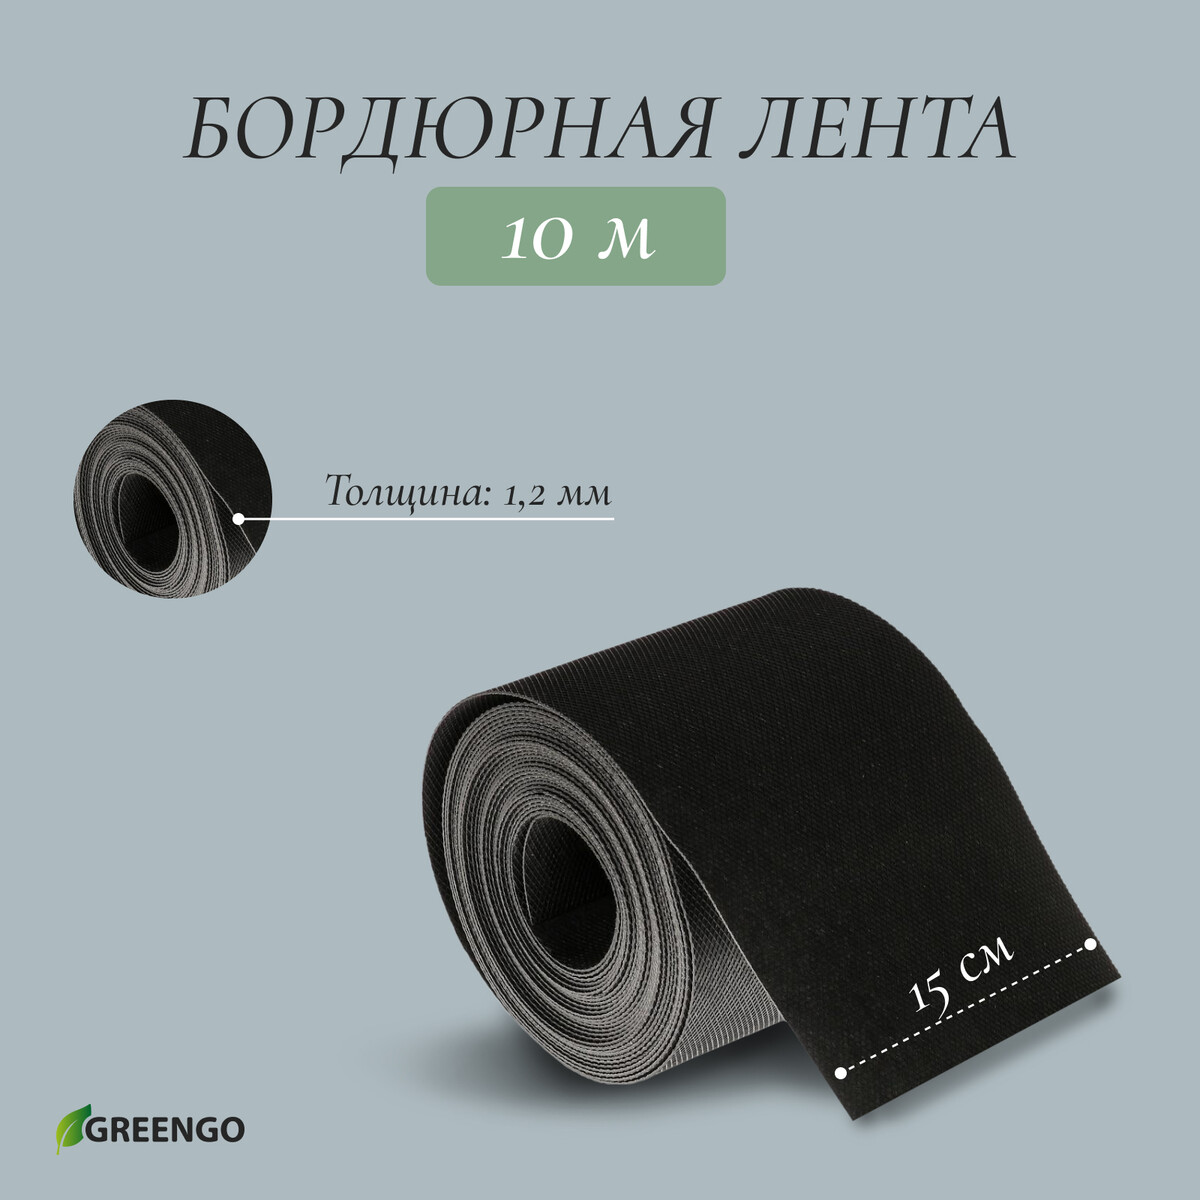 Лента бордюрная, 0.15 × 10 м, толщина 1.2 мм, пластиковая, черная, greengo лента бордюрная 0 1 × 10 м толщина 1 2 мм пластиковая коричневая greengo